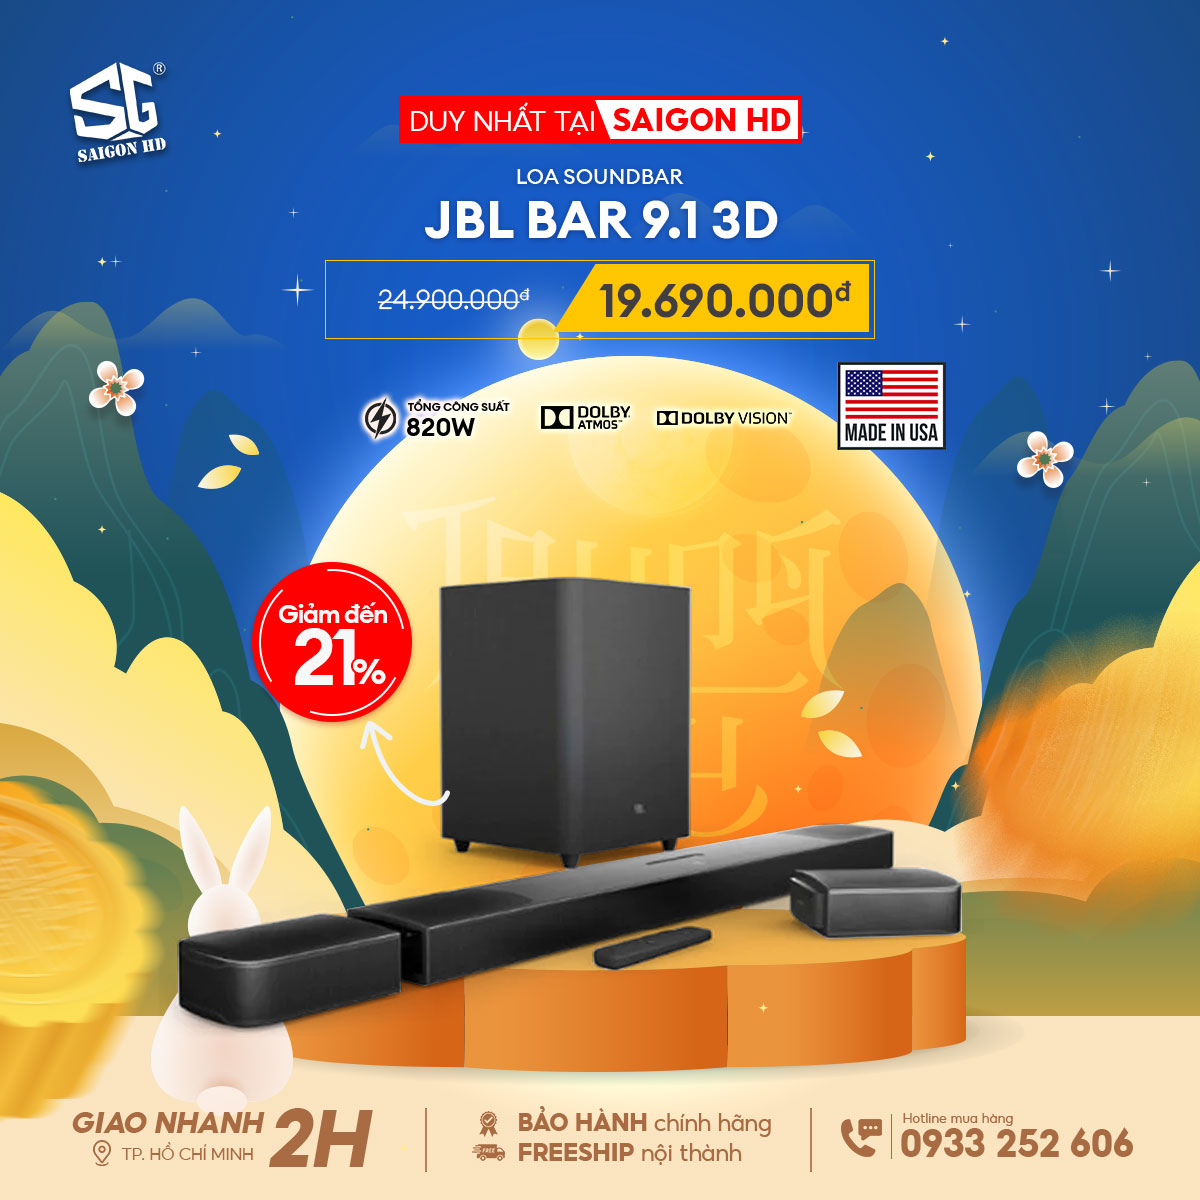 JBL BAR 9.1 3D